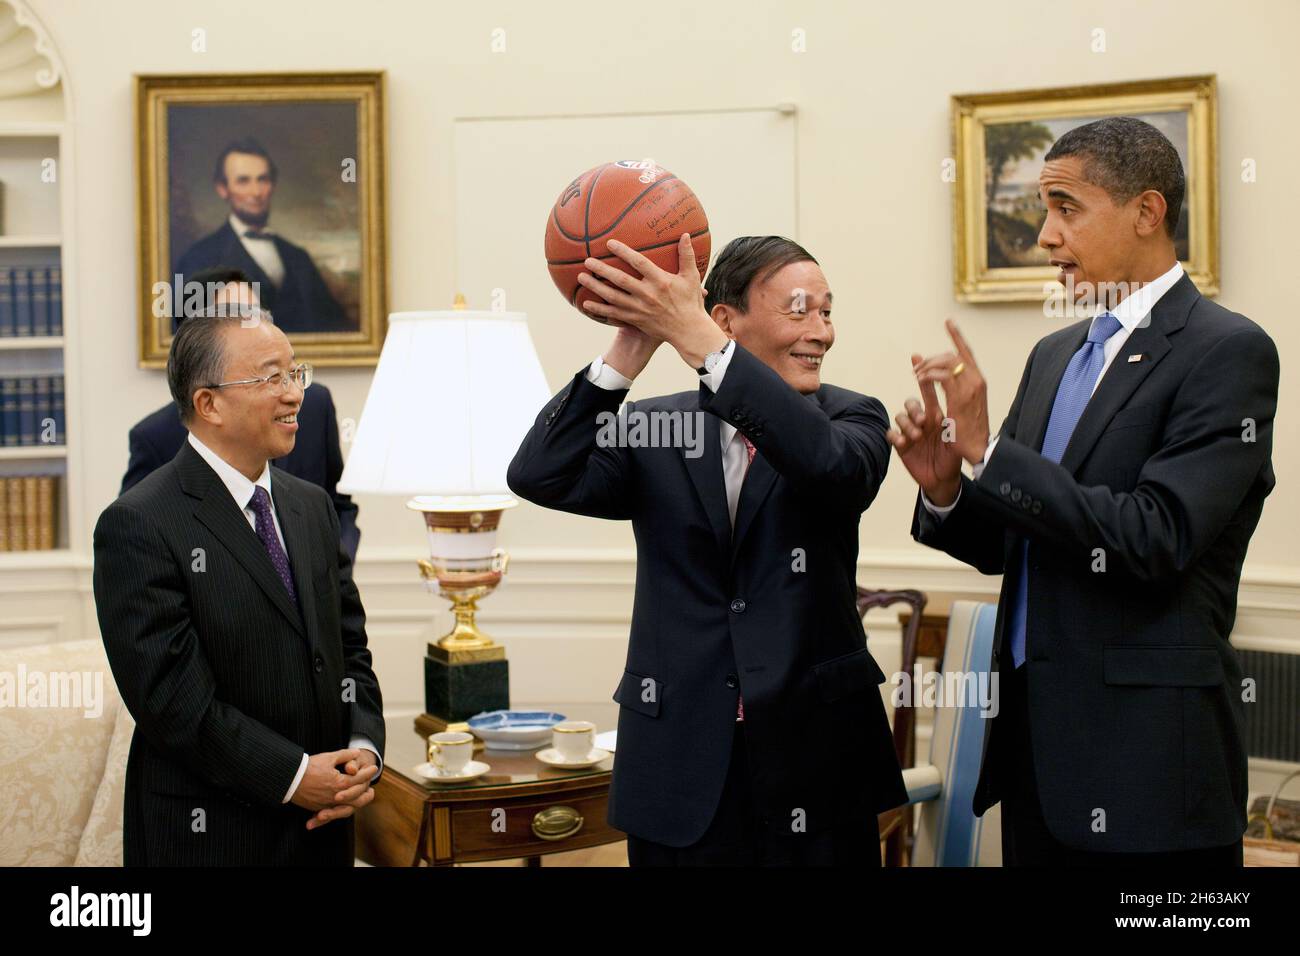 Il Vice Premier cinese Wang Qishan, centro, tiene il basket dato a lui dal Presidente Barack Obama dopo il loro incontro Oval Office martedì 28 luglio 2009, per discutere i risultati del primo dialogo strategico ed economico USA-Cina. Guardando a sinistra si trova il consigliere di Stato cinese dai Bingguo Foto Stock